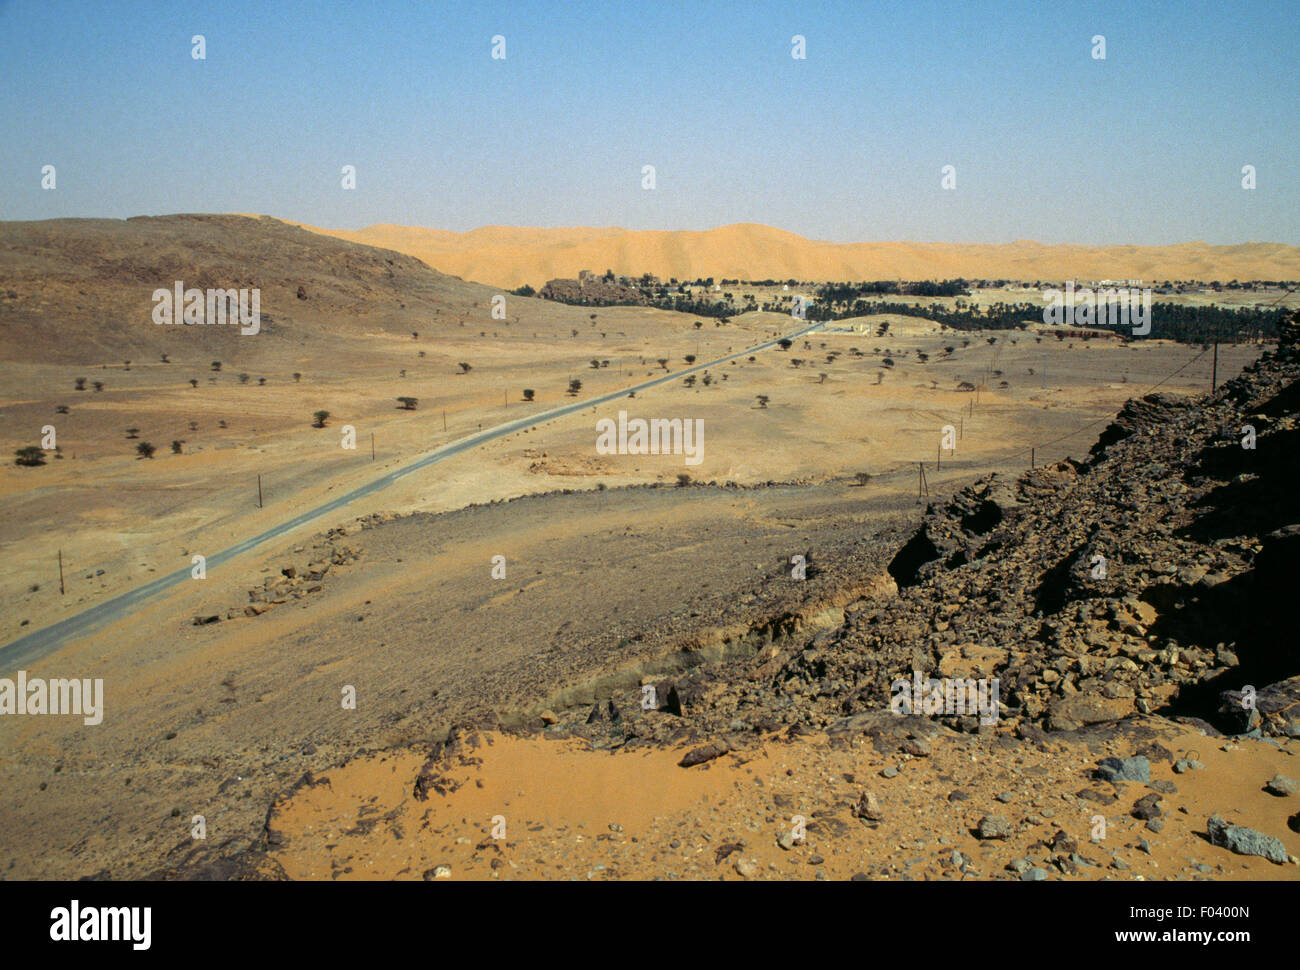 The Taghit oasis, Sahara Desert, Algeria. Stock Photo